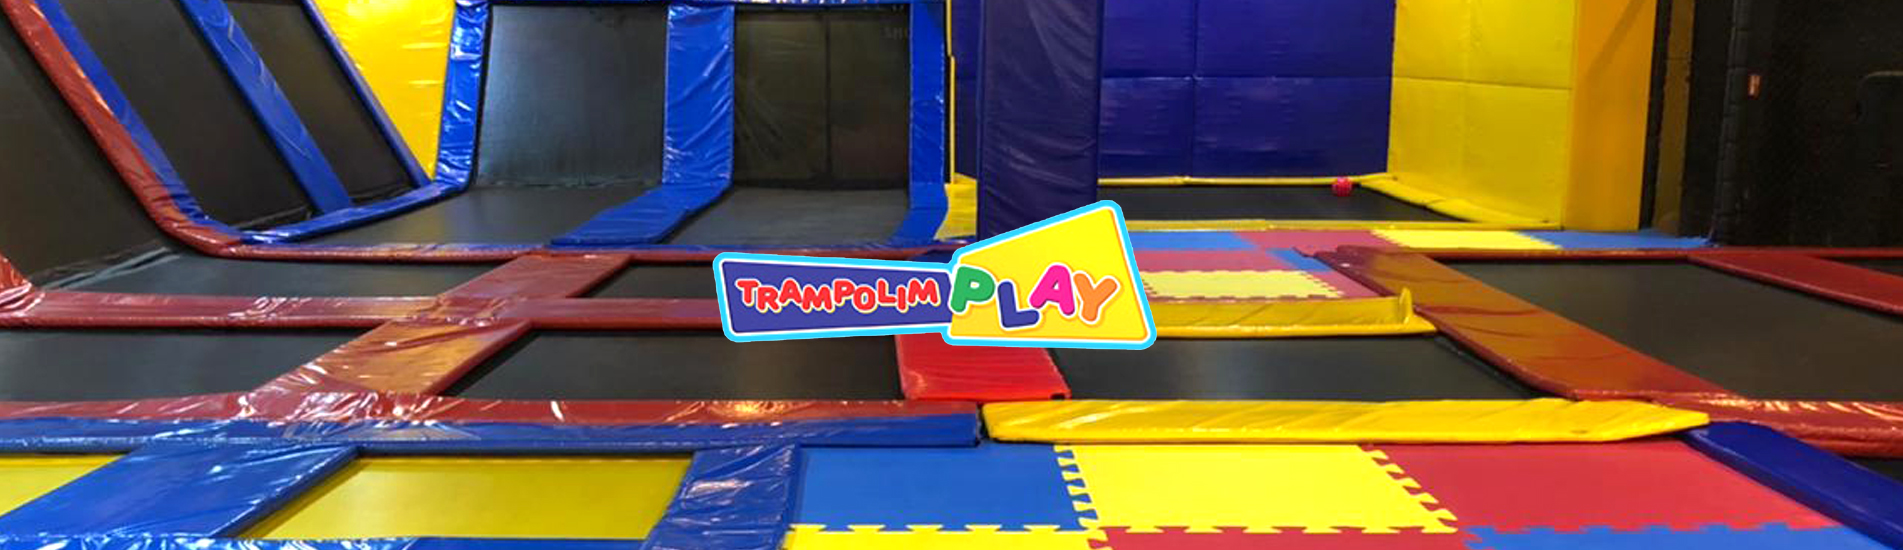 Trampolim Play garante diversão para todas as idades.